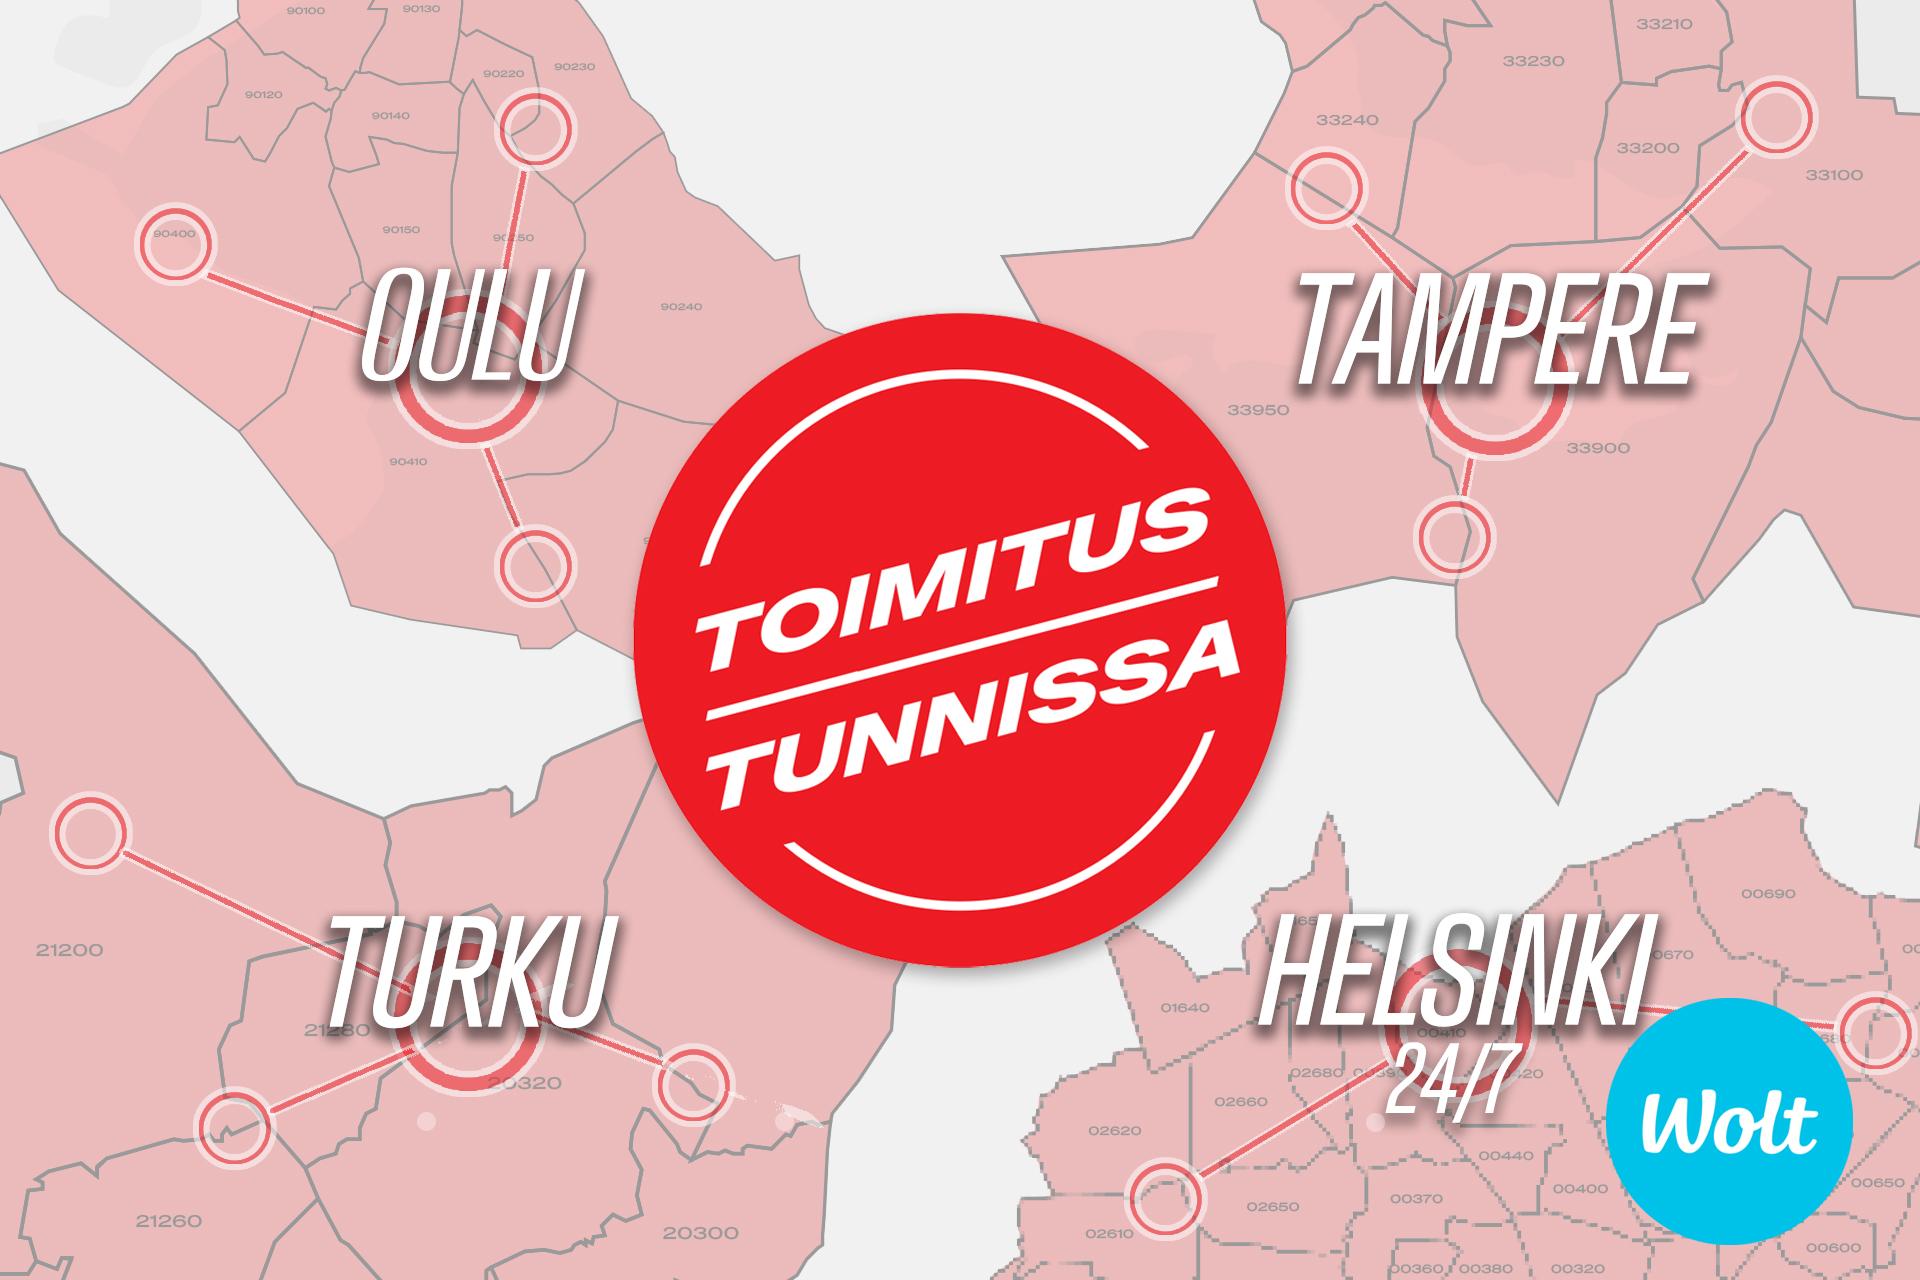 Toimitus tunnissa pallero ja taustalla Oulun, Tampereen, Turun ja Helsingin postinumeroalueet kartalla. Wolt-logo oikeassa alakulmassa.